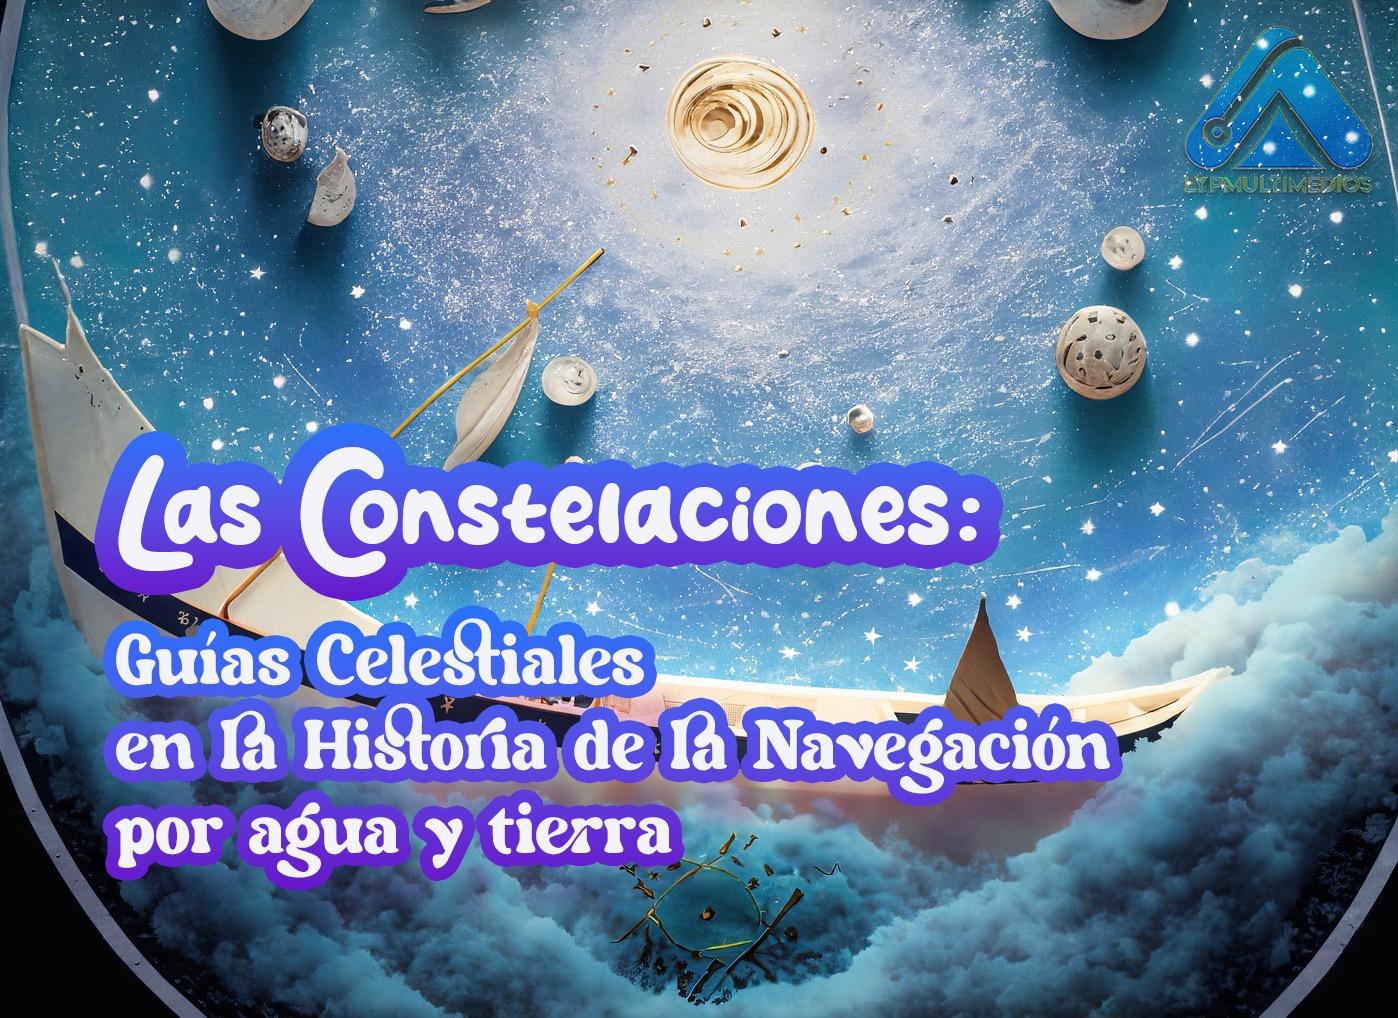 Las Constelaciones: Guías Celestiales en la Historia de la Navegación por agua y tierra